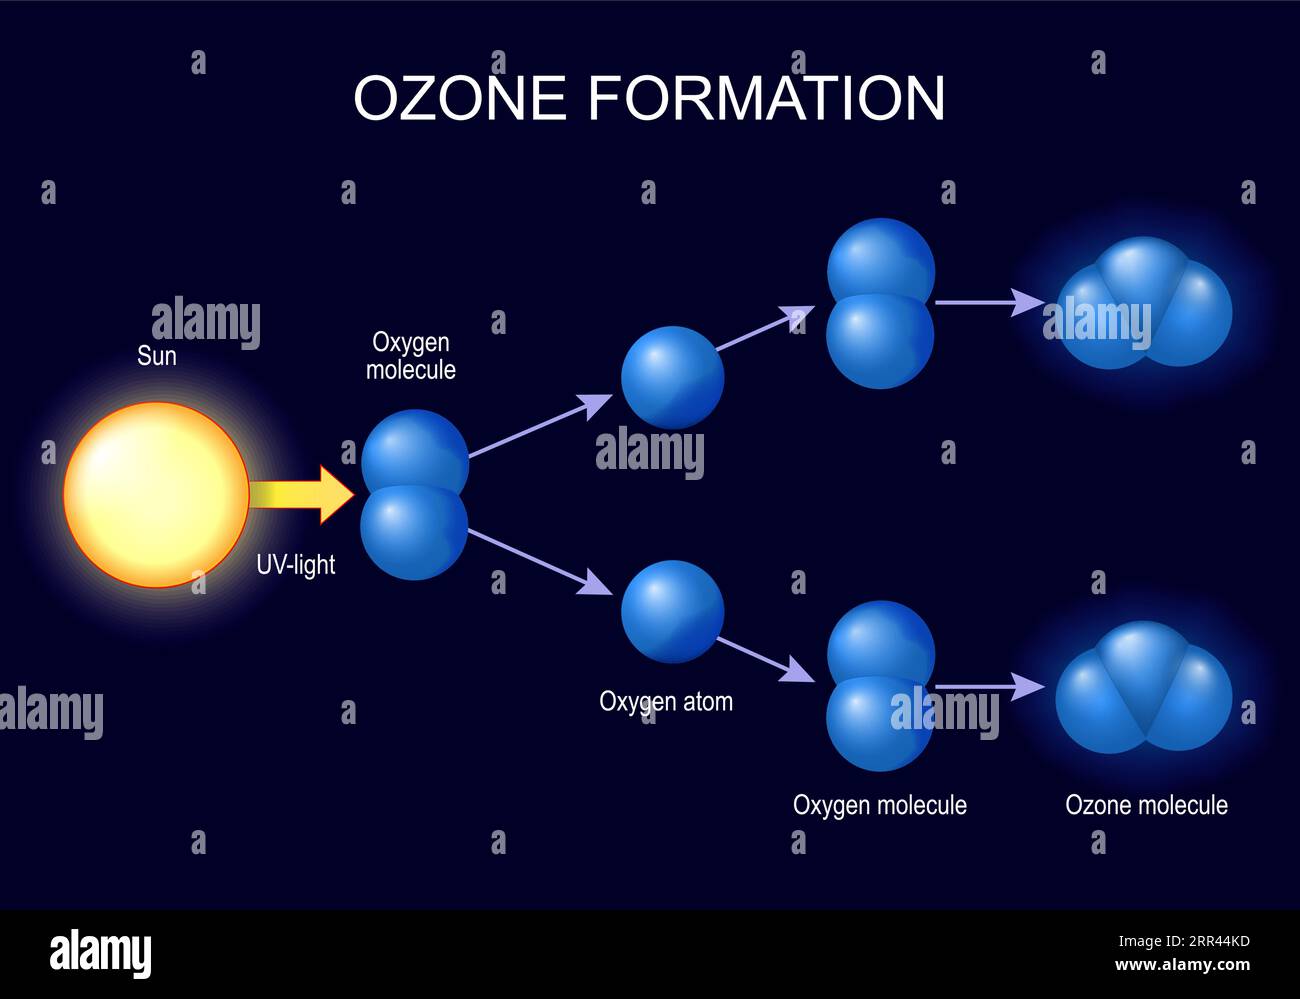 Ozonbildung. Moleküle Ozon- und Sauerstoffatome auf dunklem Hintergrund. Ozon ist eine Form von Sauerstoff, bei der drei Sauerstoffatome miteinander verbunden sind. Vektorillust Stock Vektor